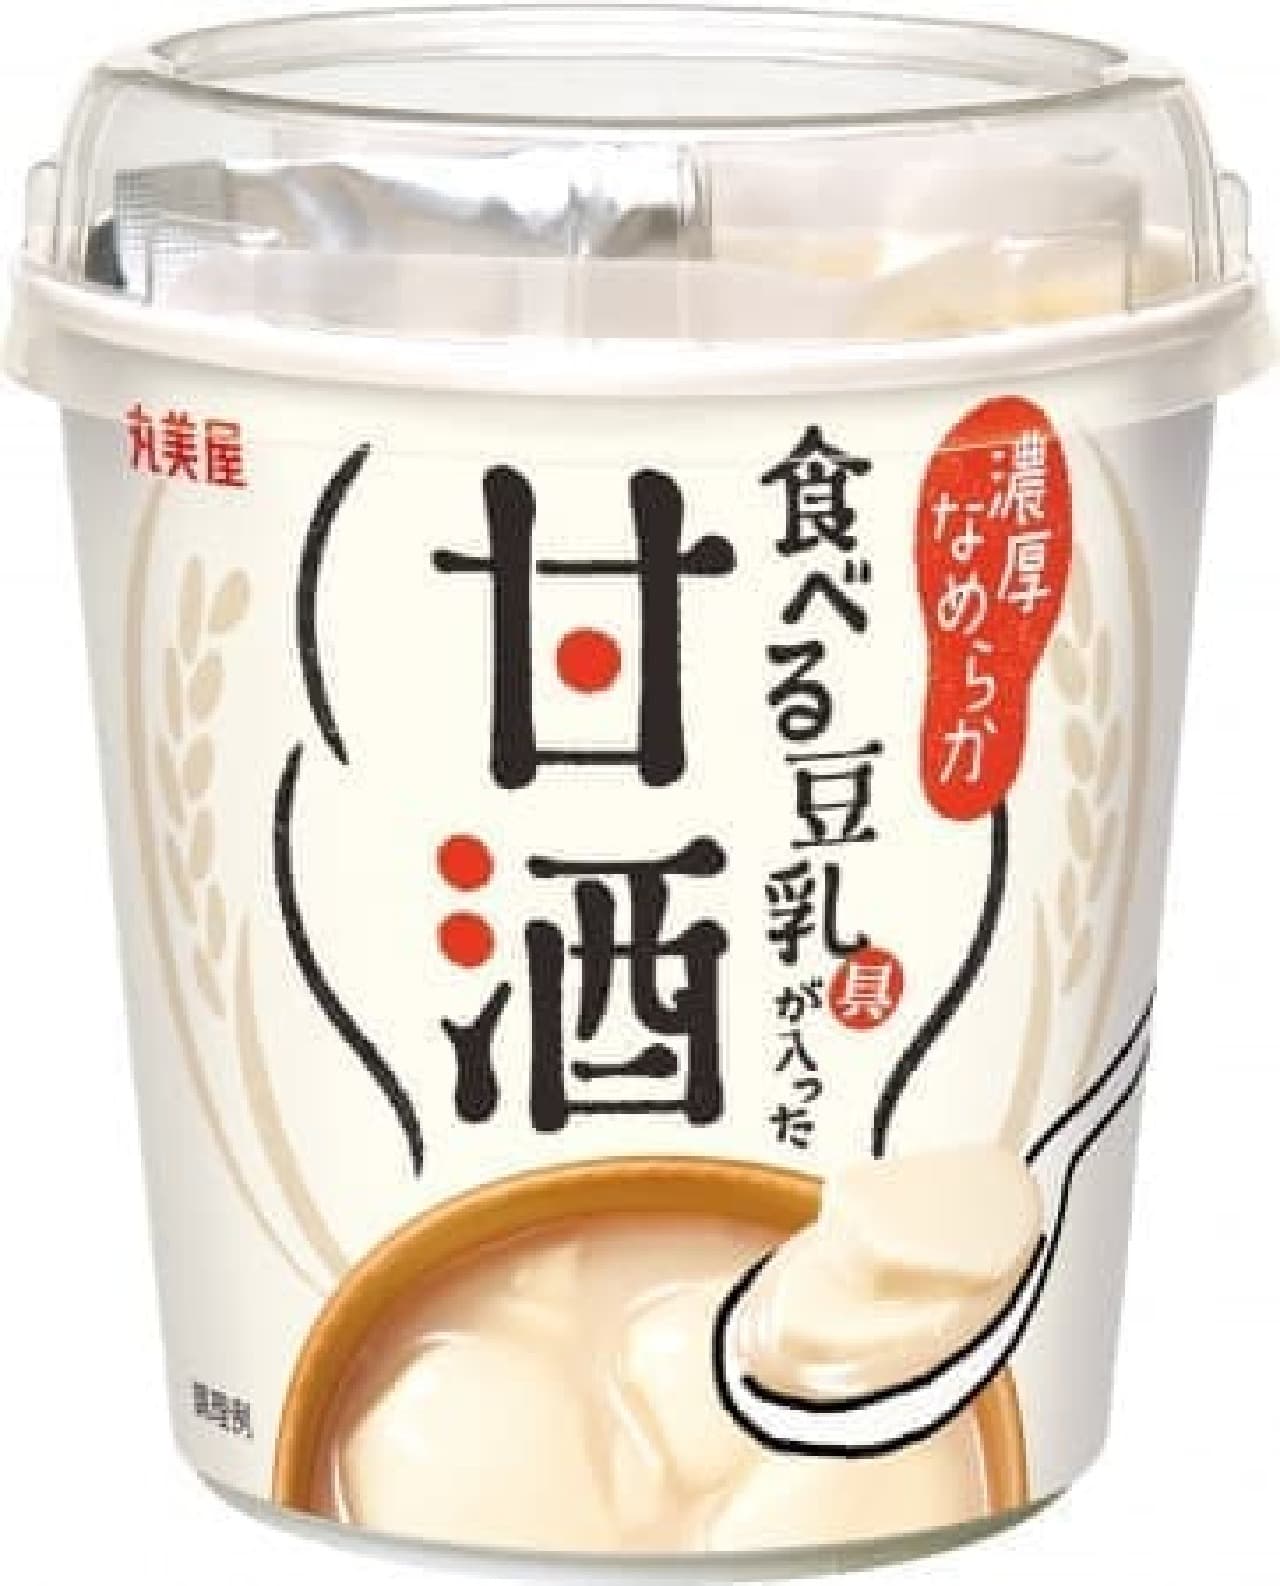 Amazake with soy milk to eat